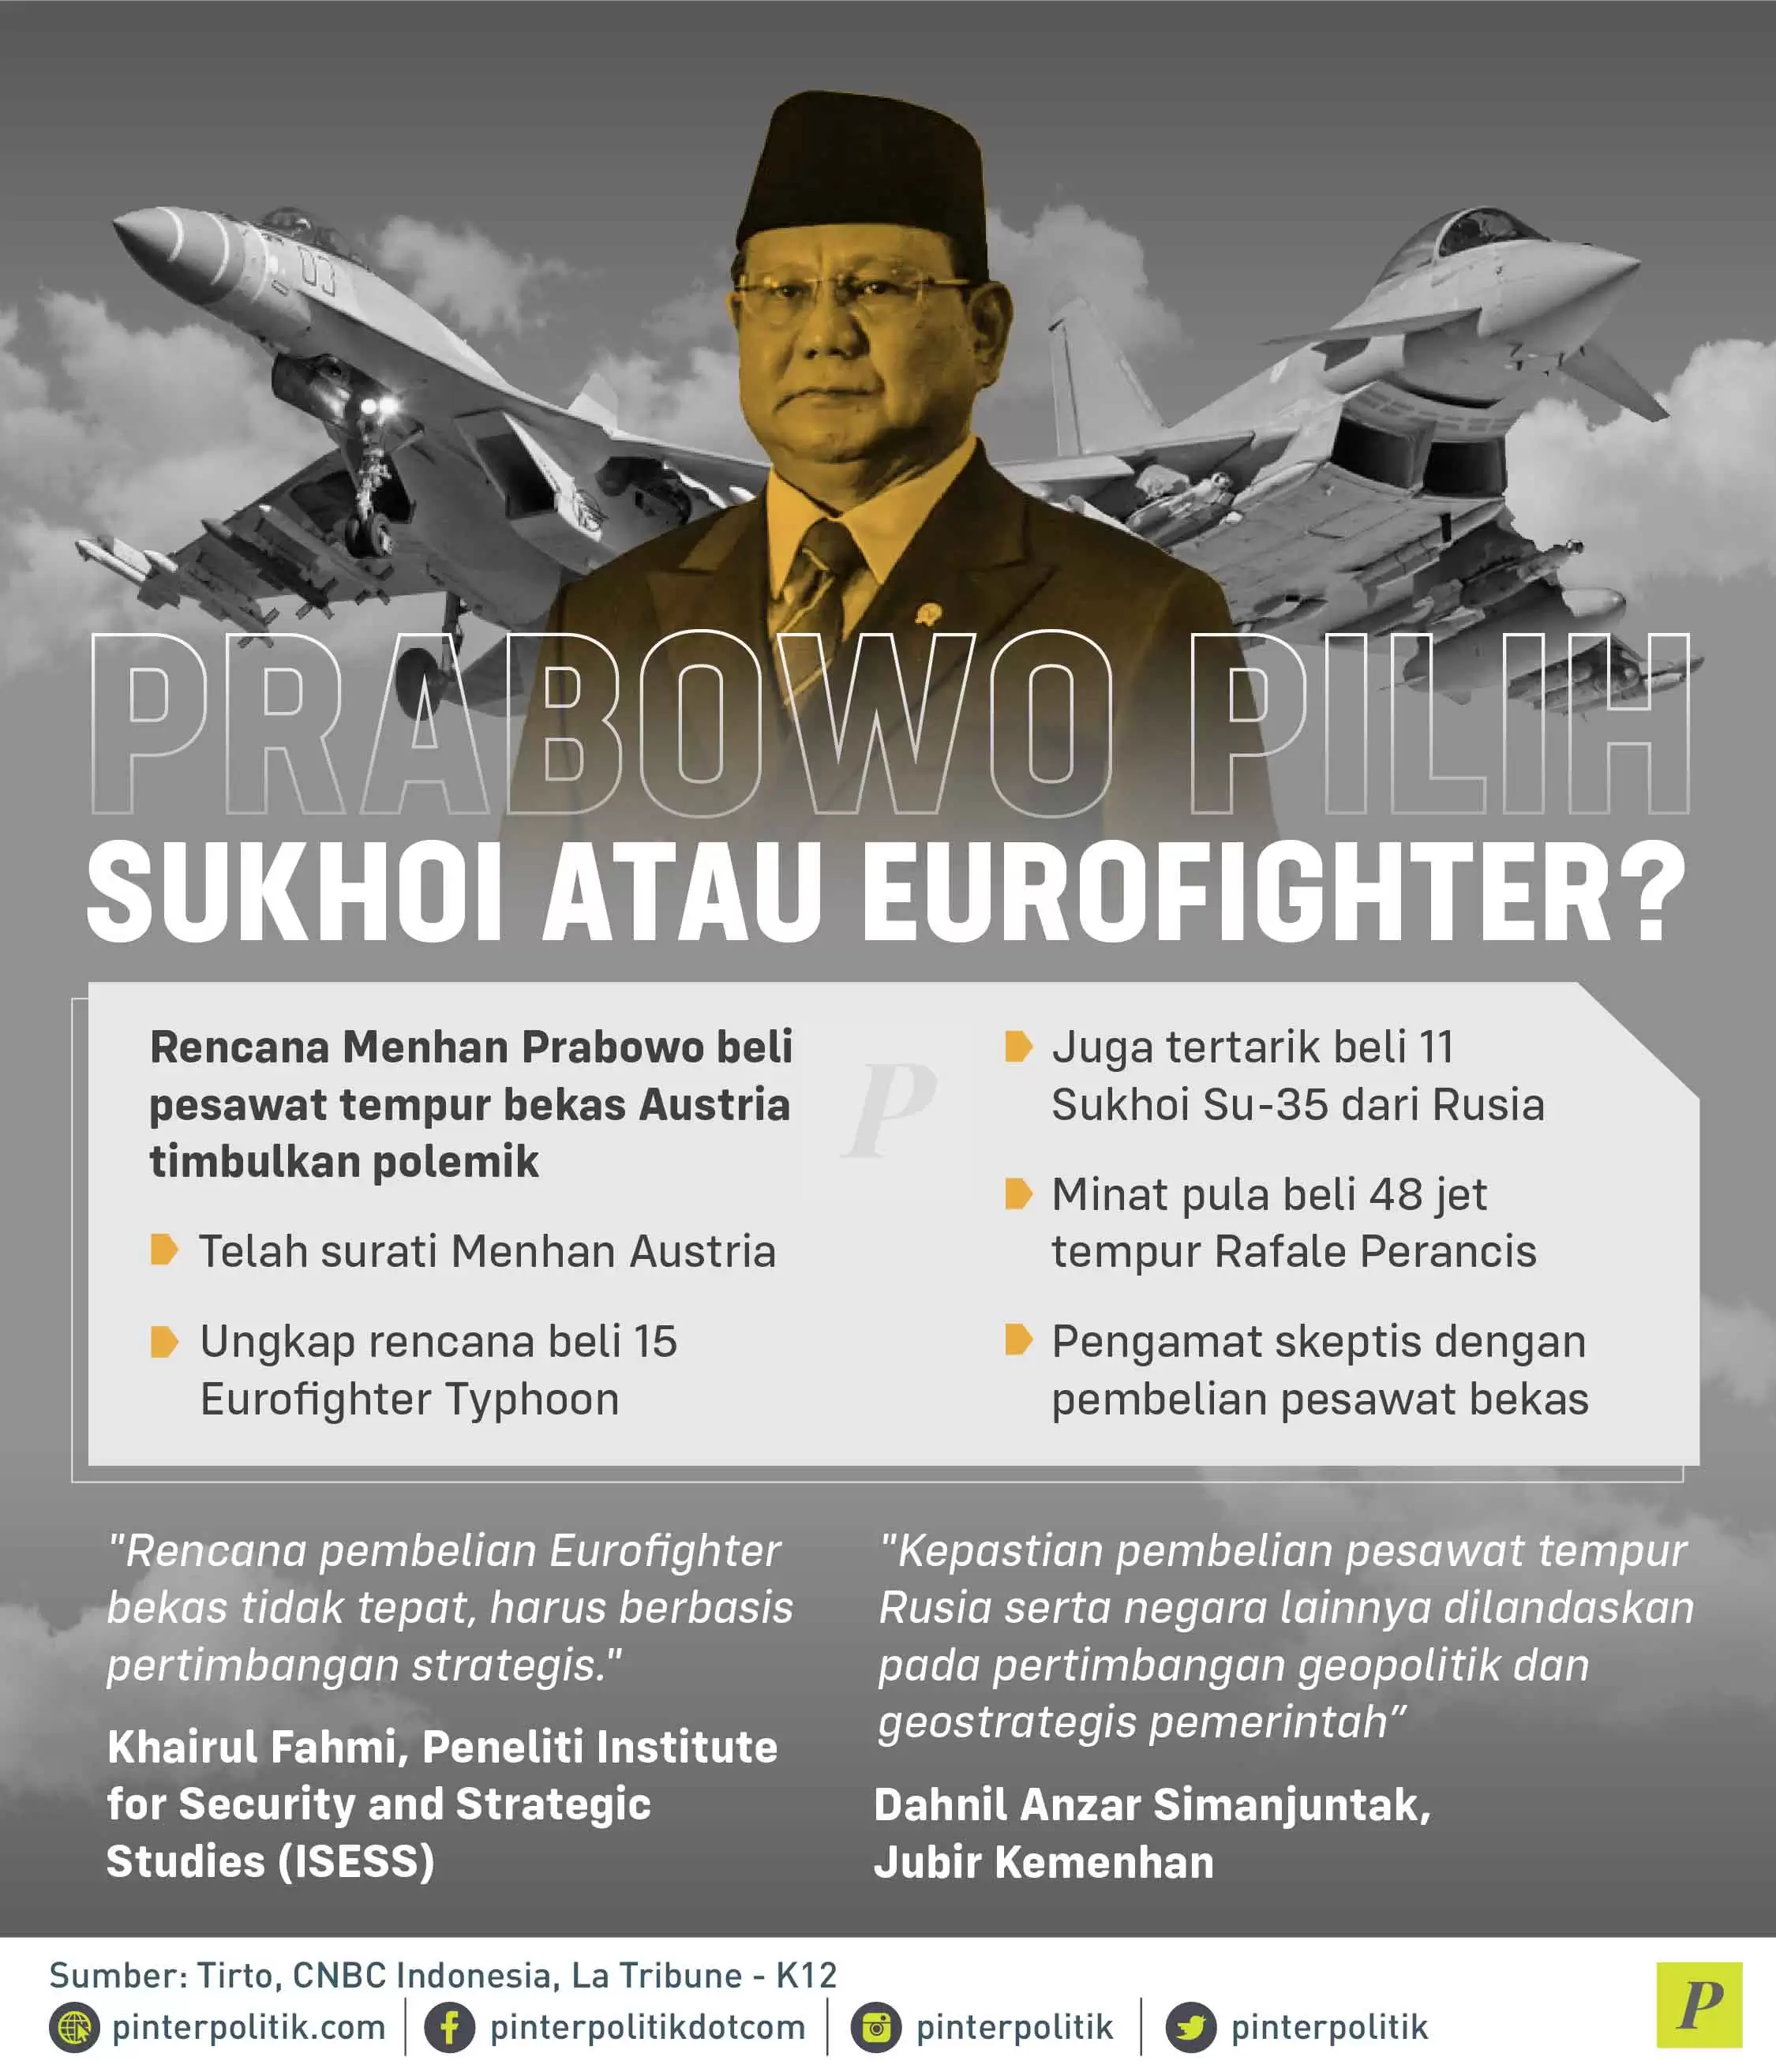 Prabowo Pilih Sukhoi atau Eurofighter?